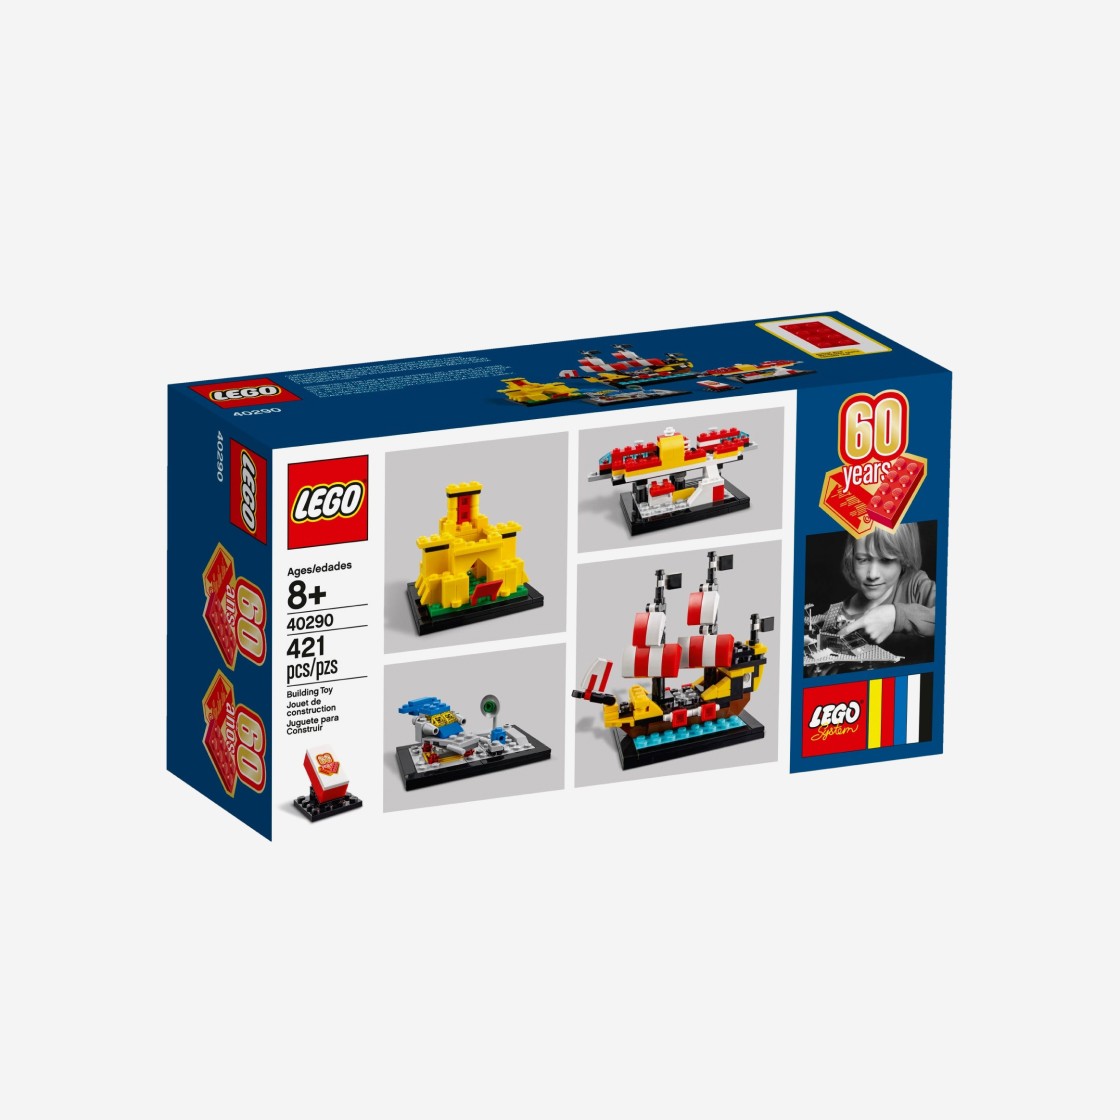 Lego] 레고 브릭 60년 발매 정보 - 40290 - 럭드 (Luck-D)